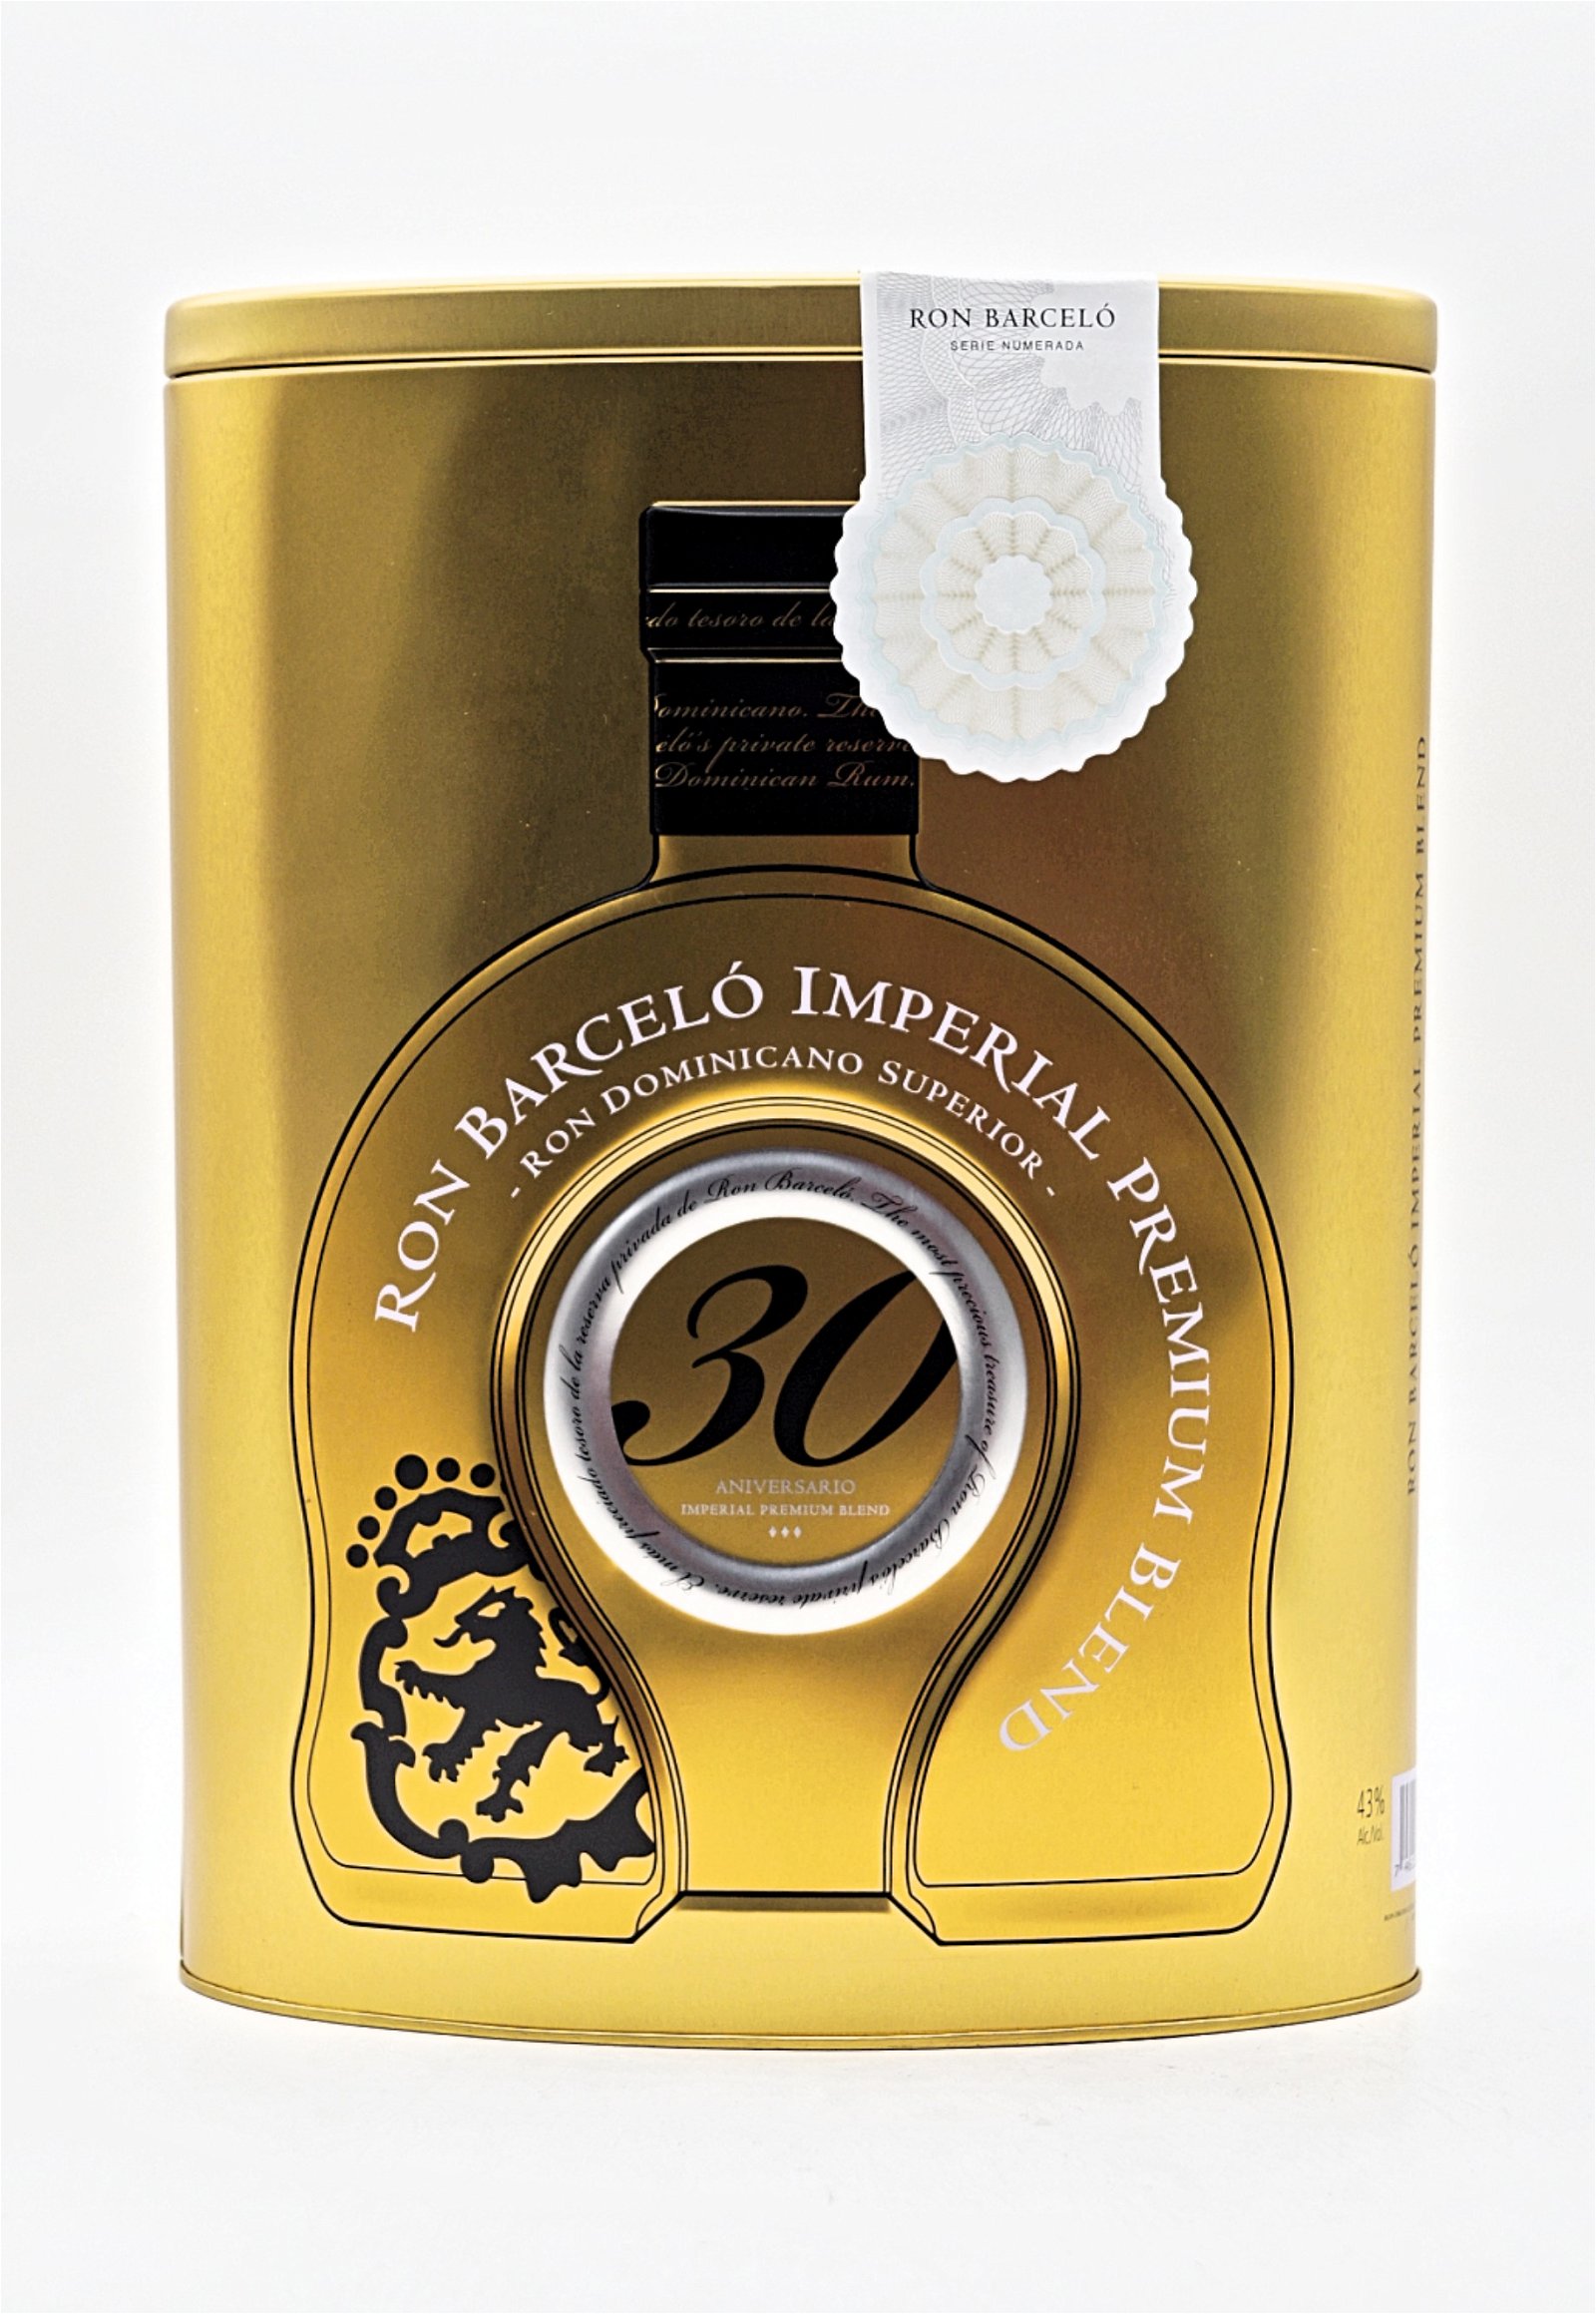 Ron Barcelo 30 Anniversario Imperial Premium Blend 